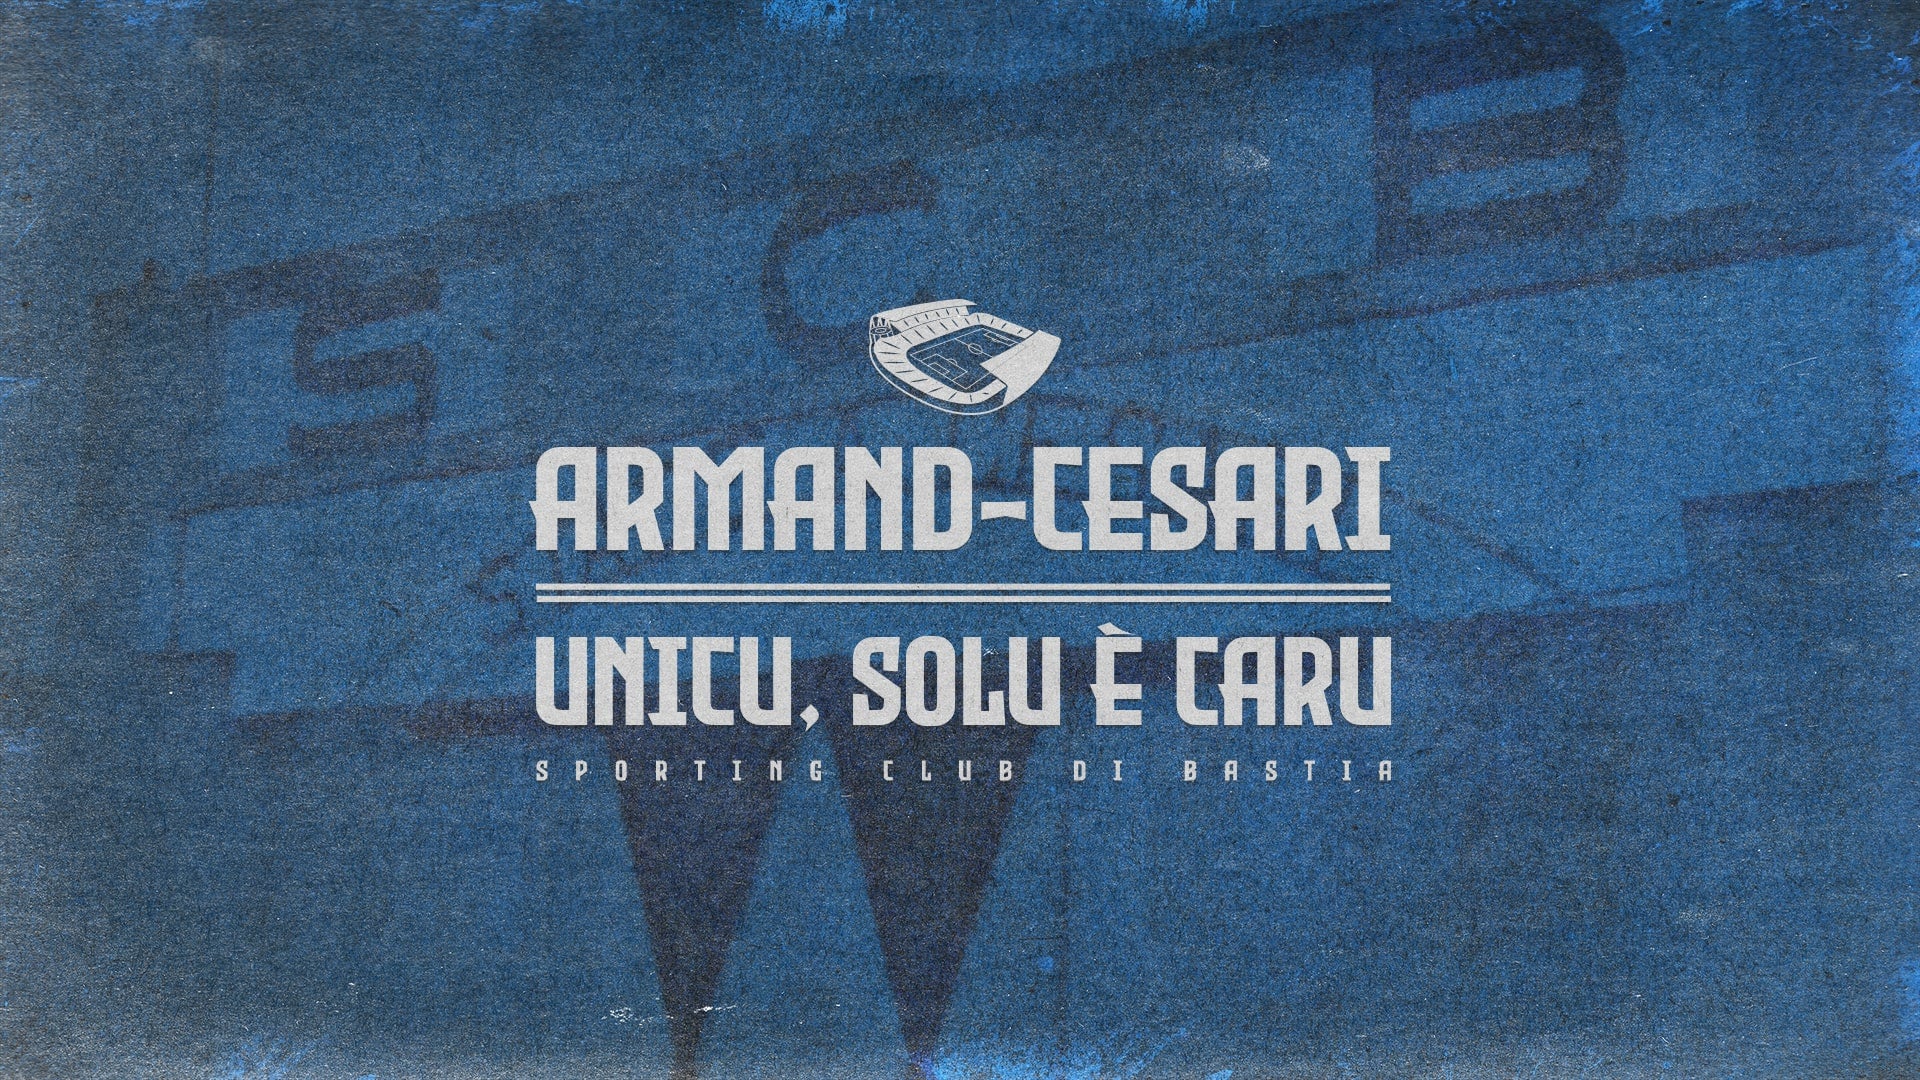 Armand-Cesari unicu, solu è caru